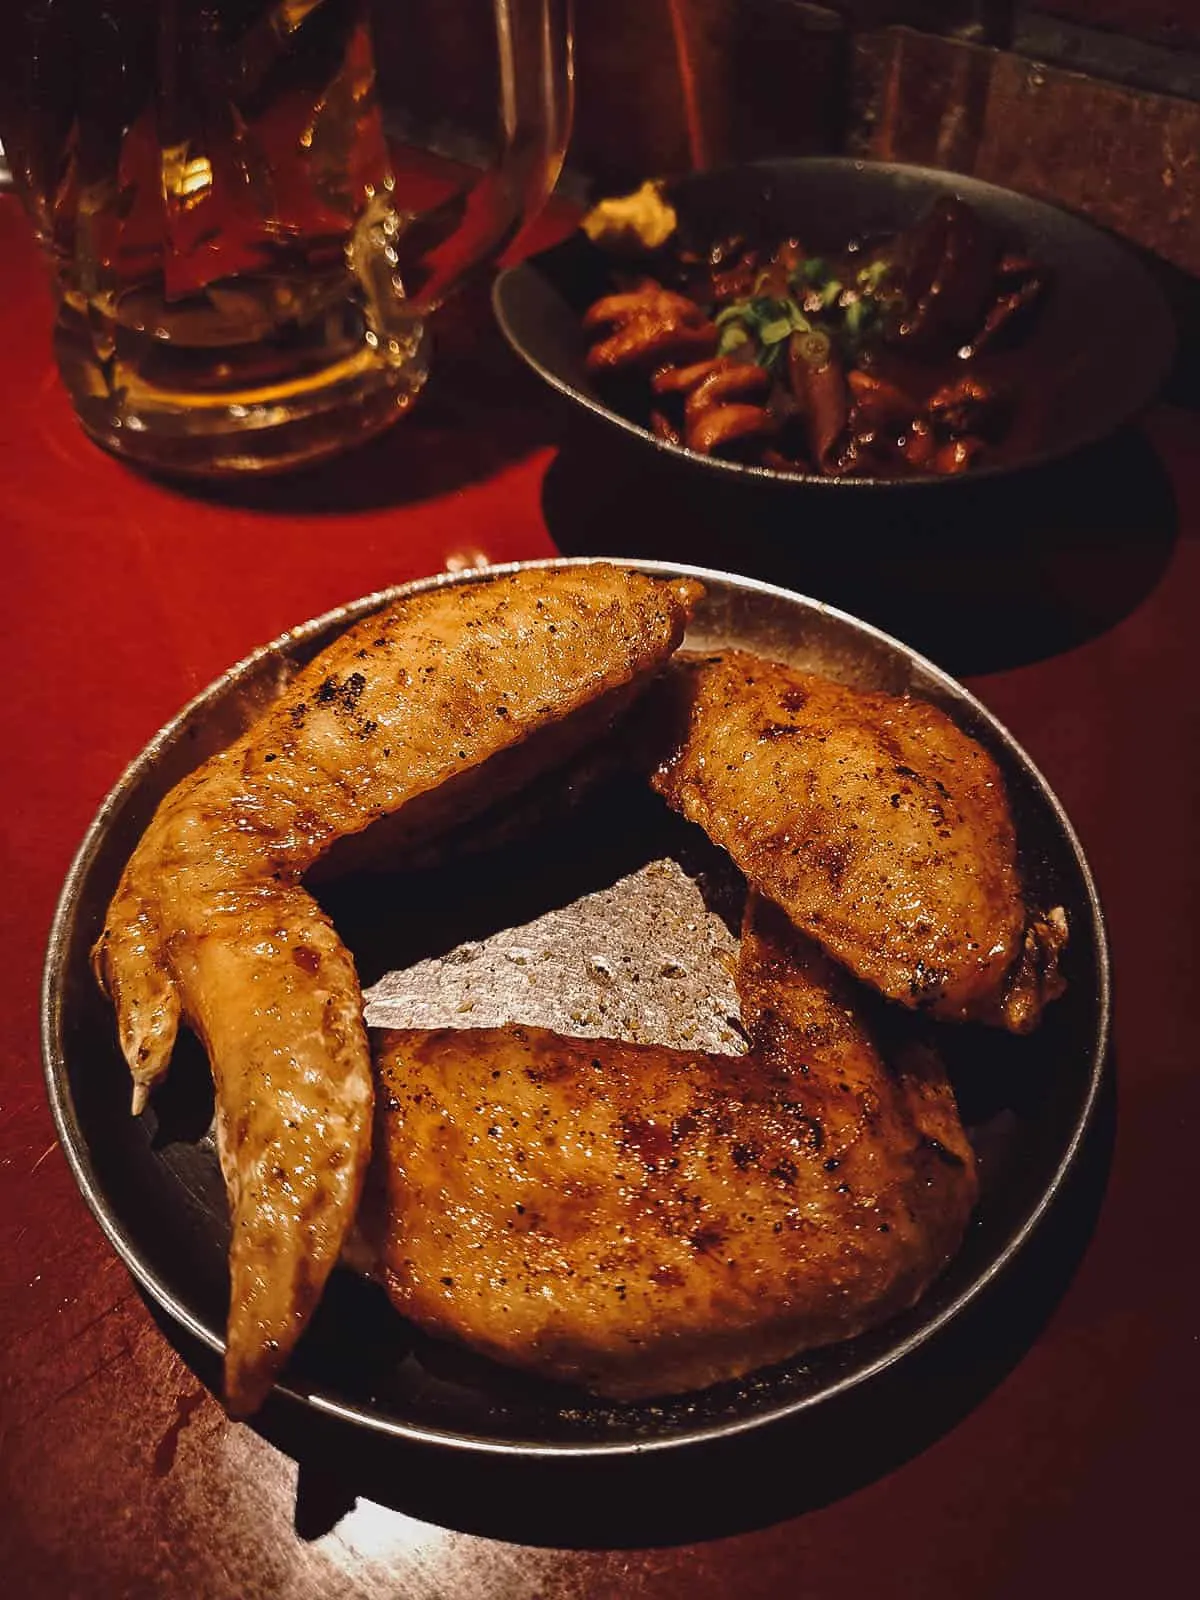 Tebasaki or deep-fried chicken wings, a popular bar food in Japan